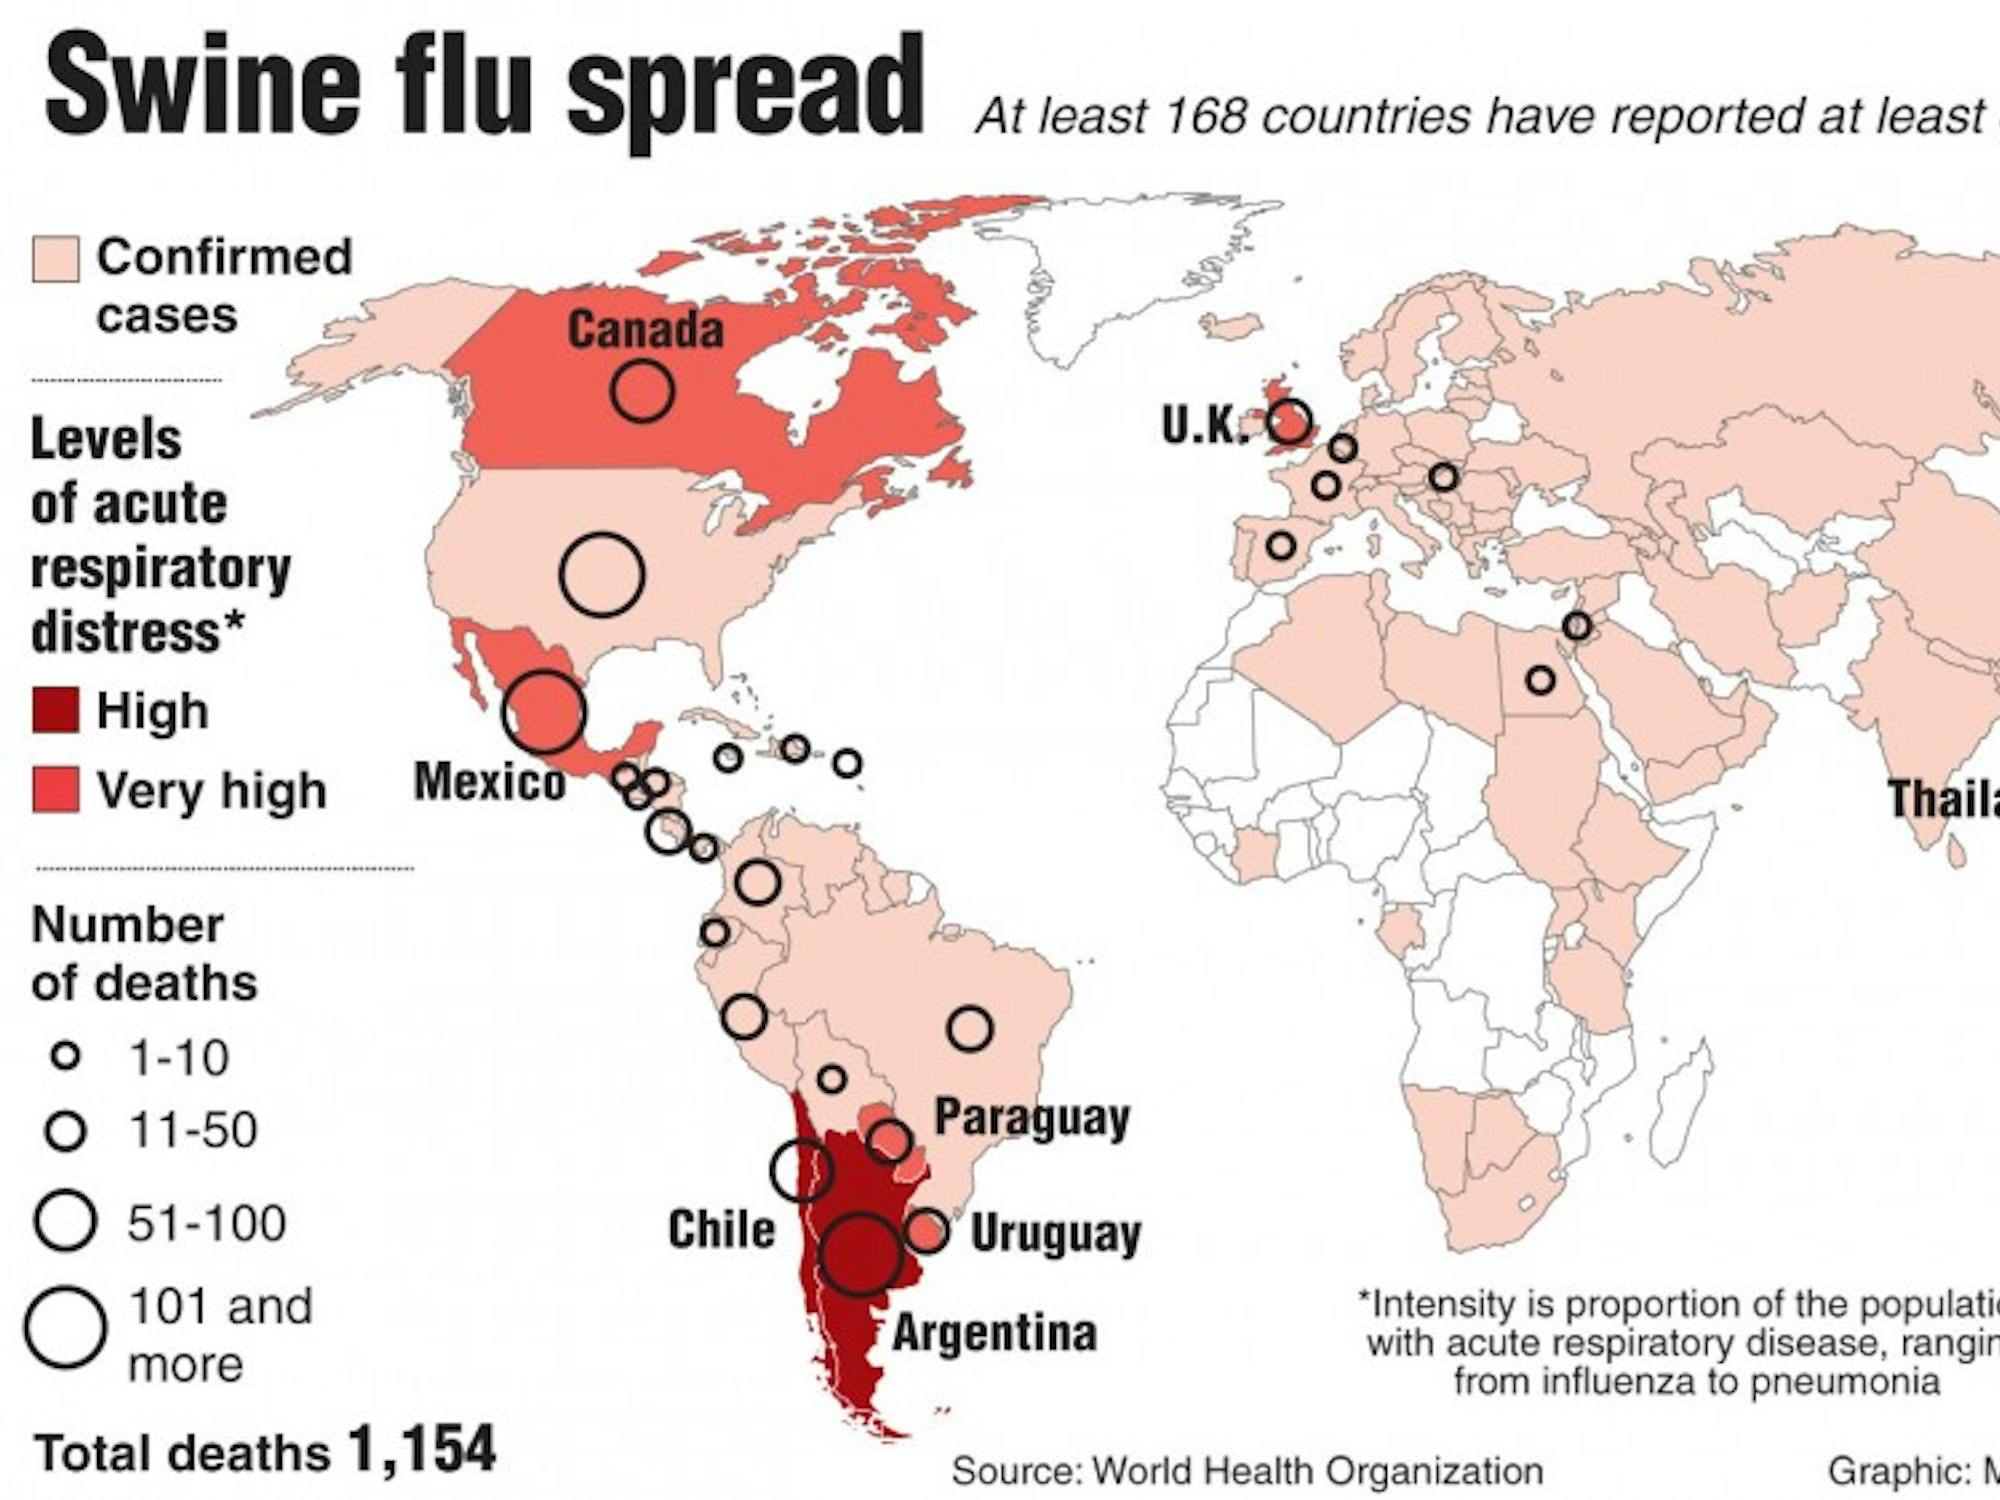 20090810 Swine flu spread